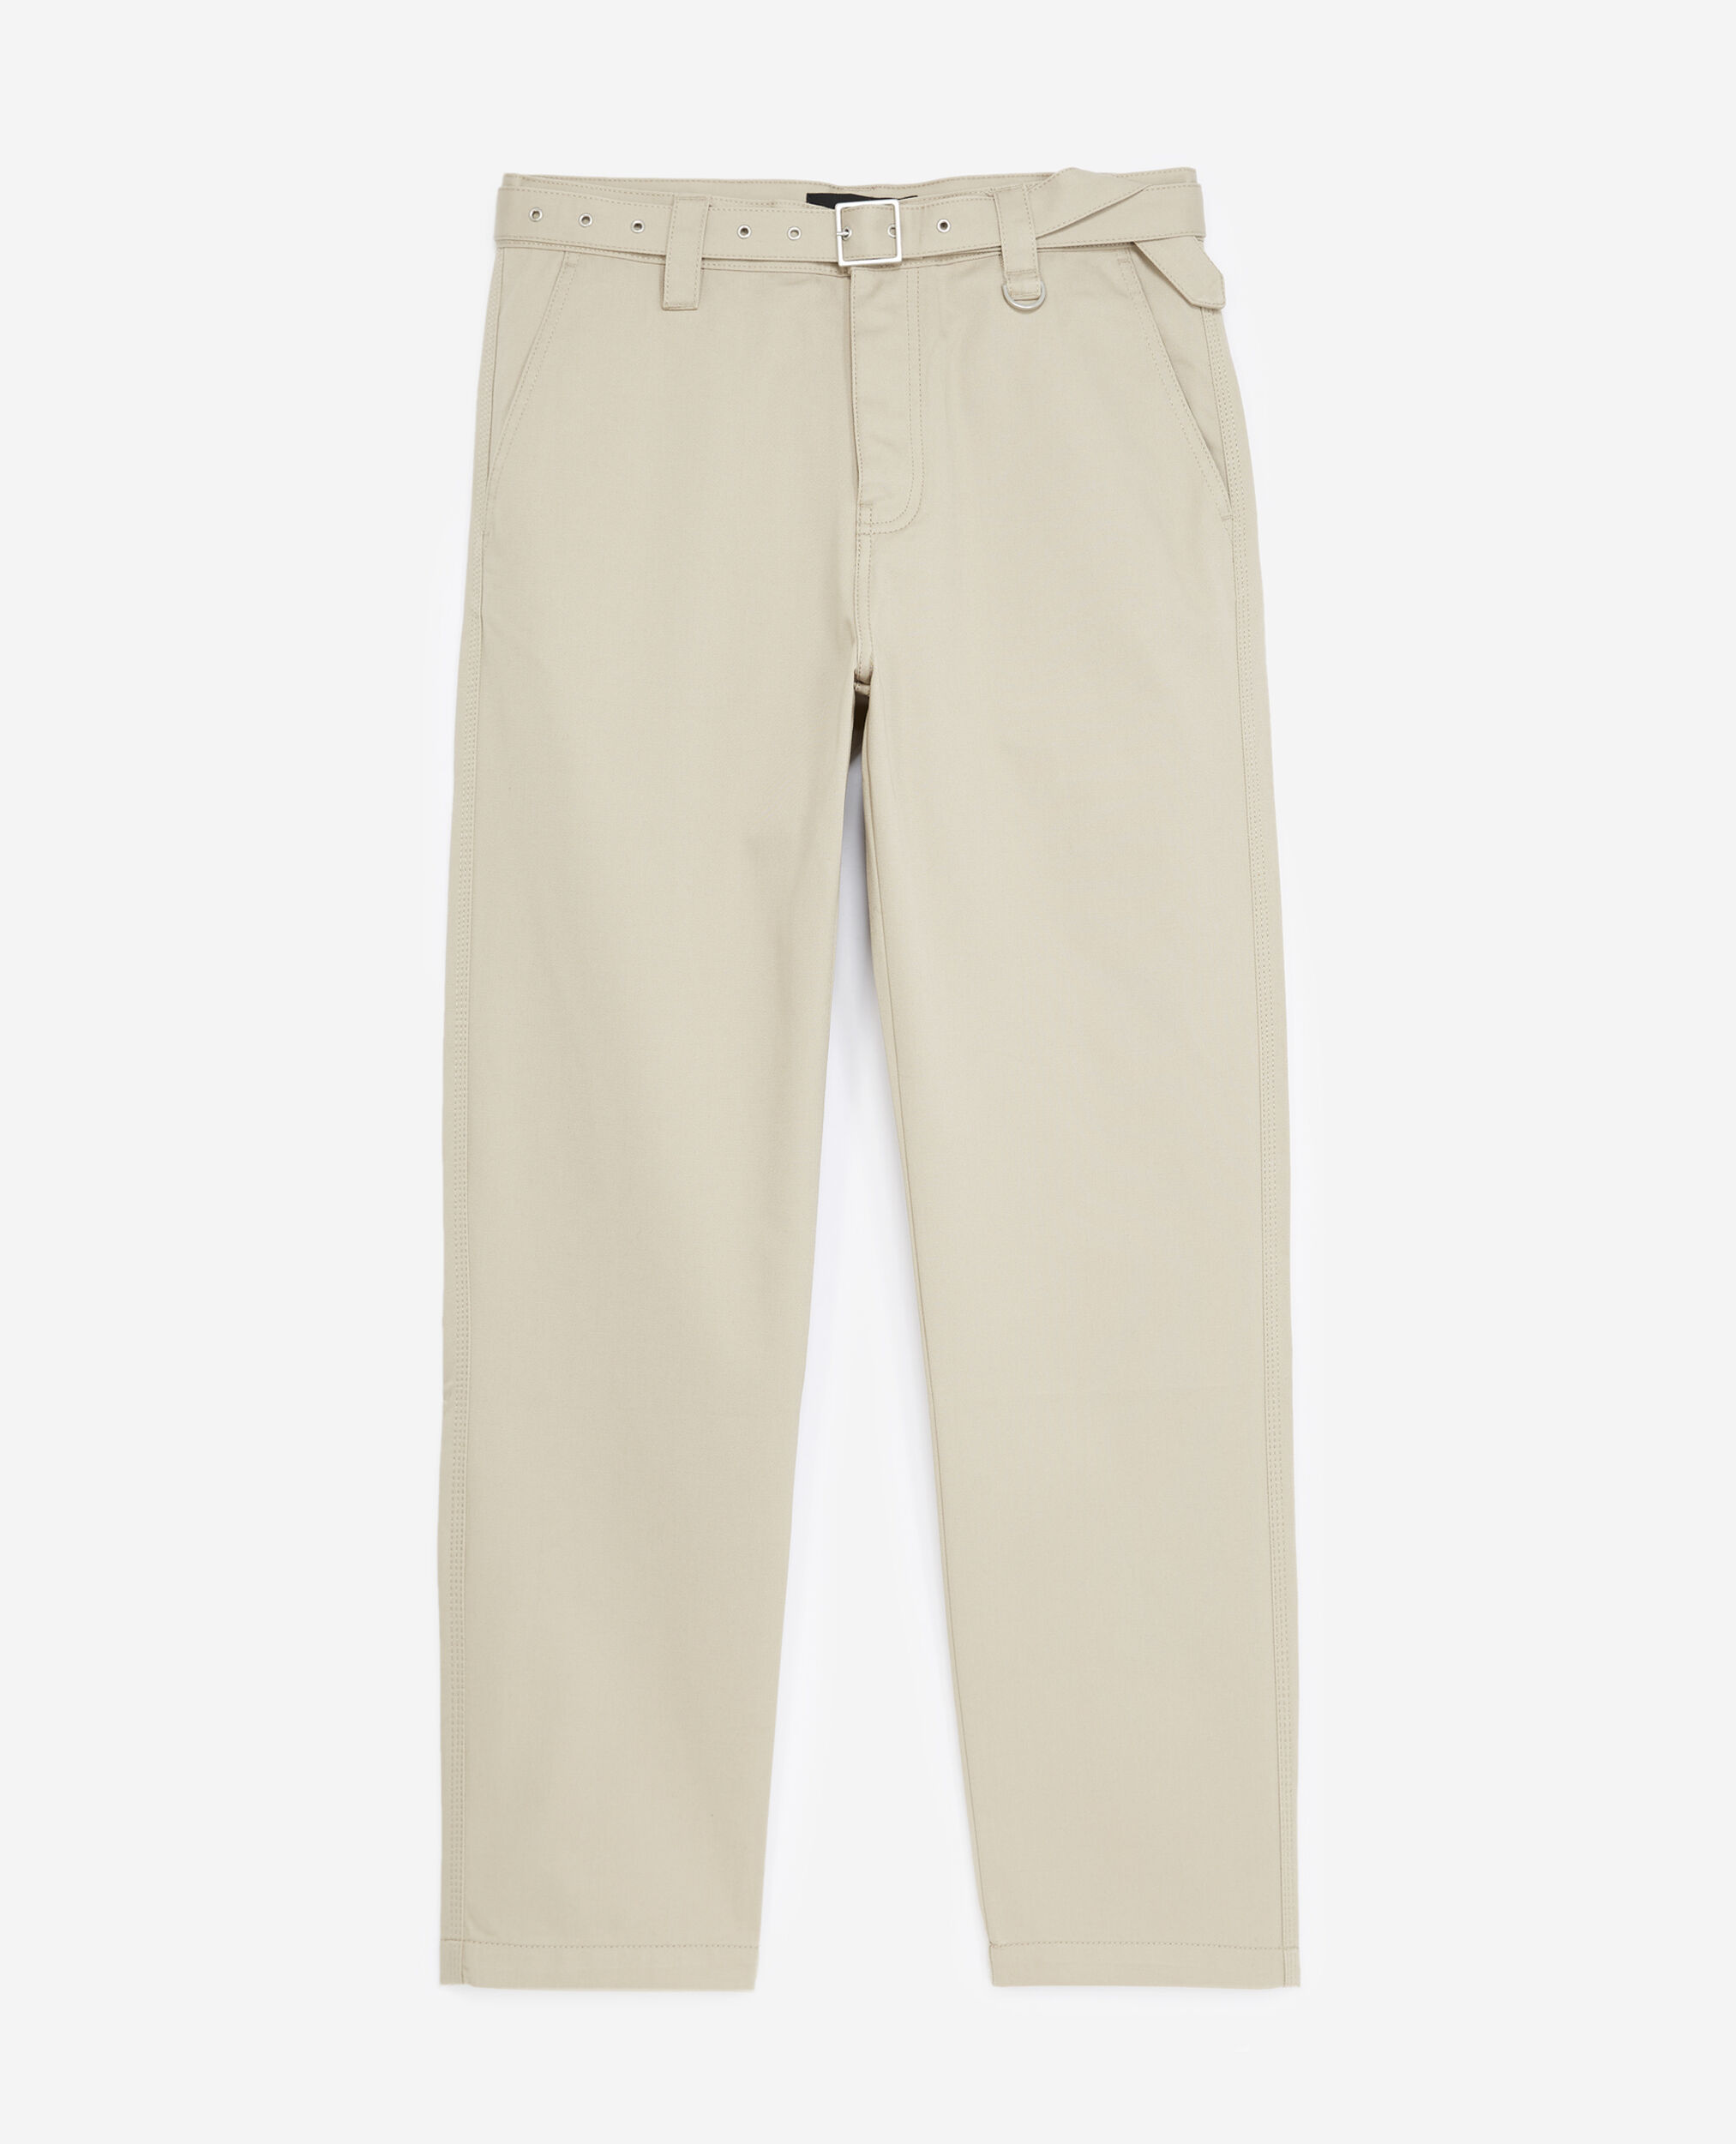 Pantalón algodón beige cinturón integrado, BEIGE, hi-res image number null